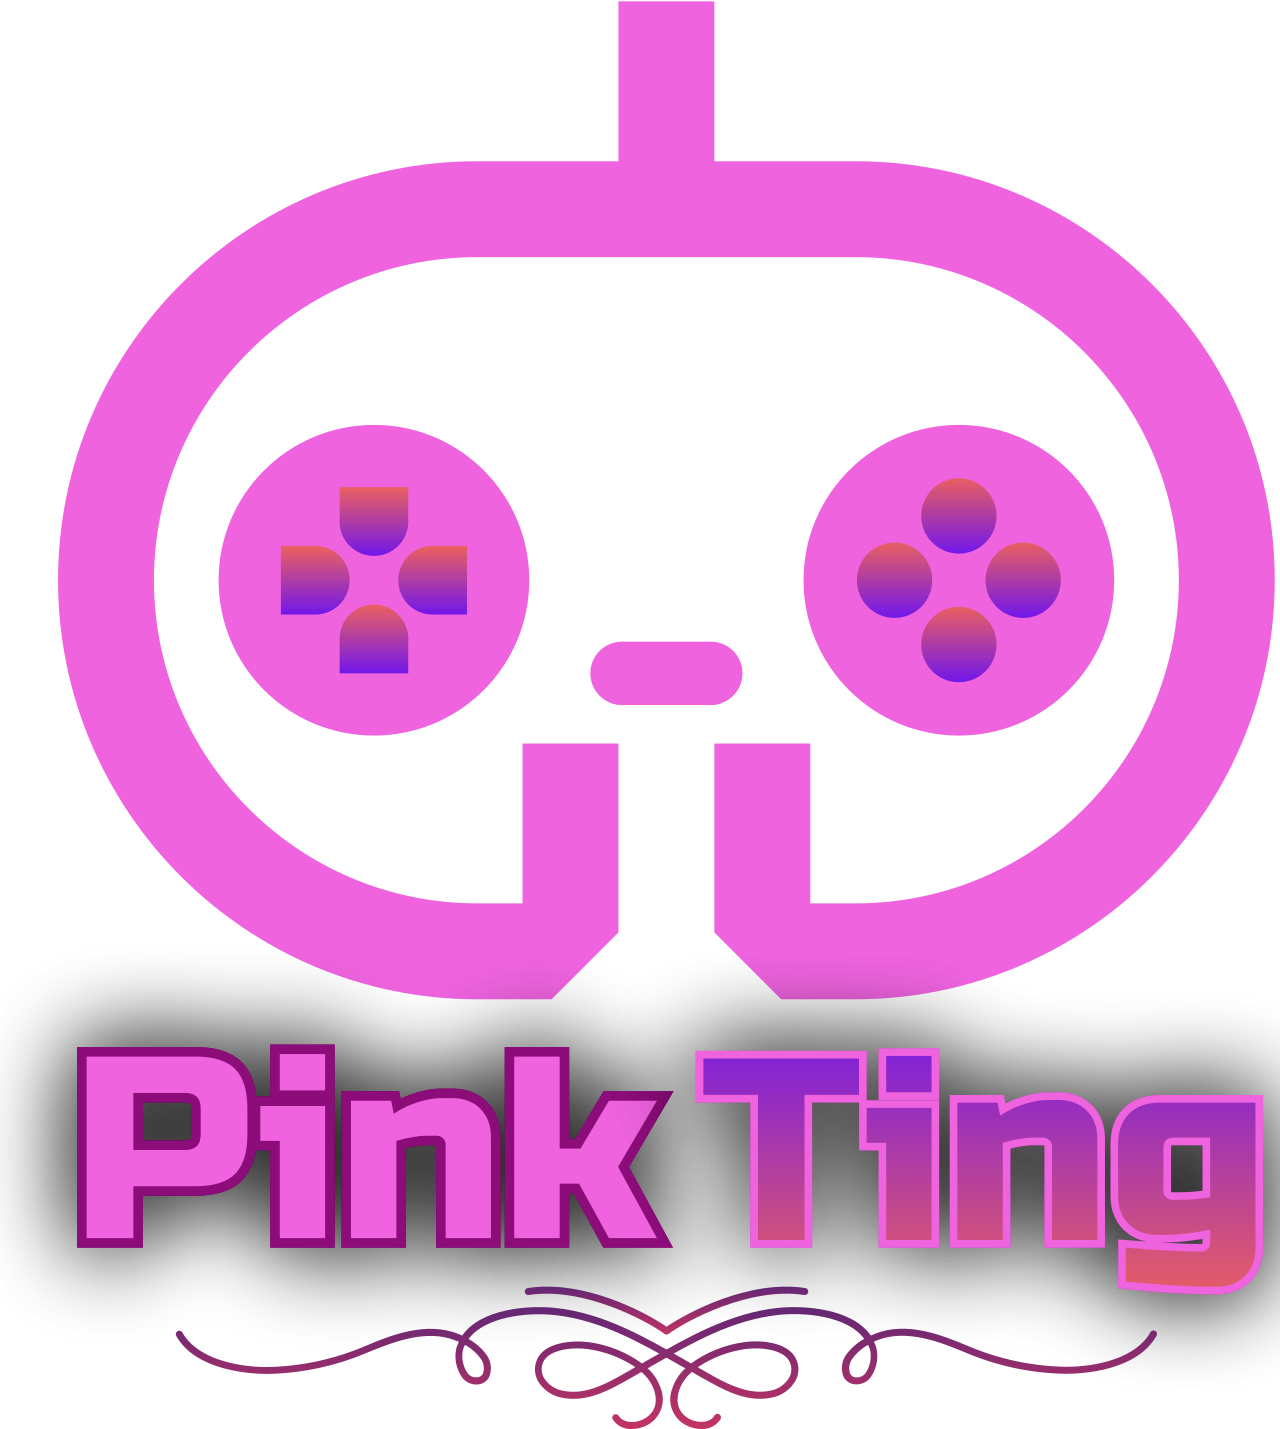 Pink's logo